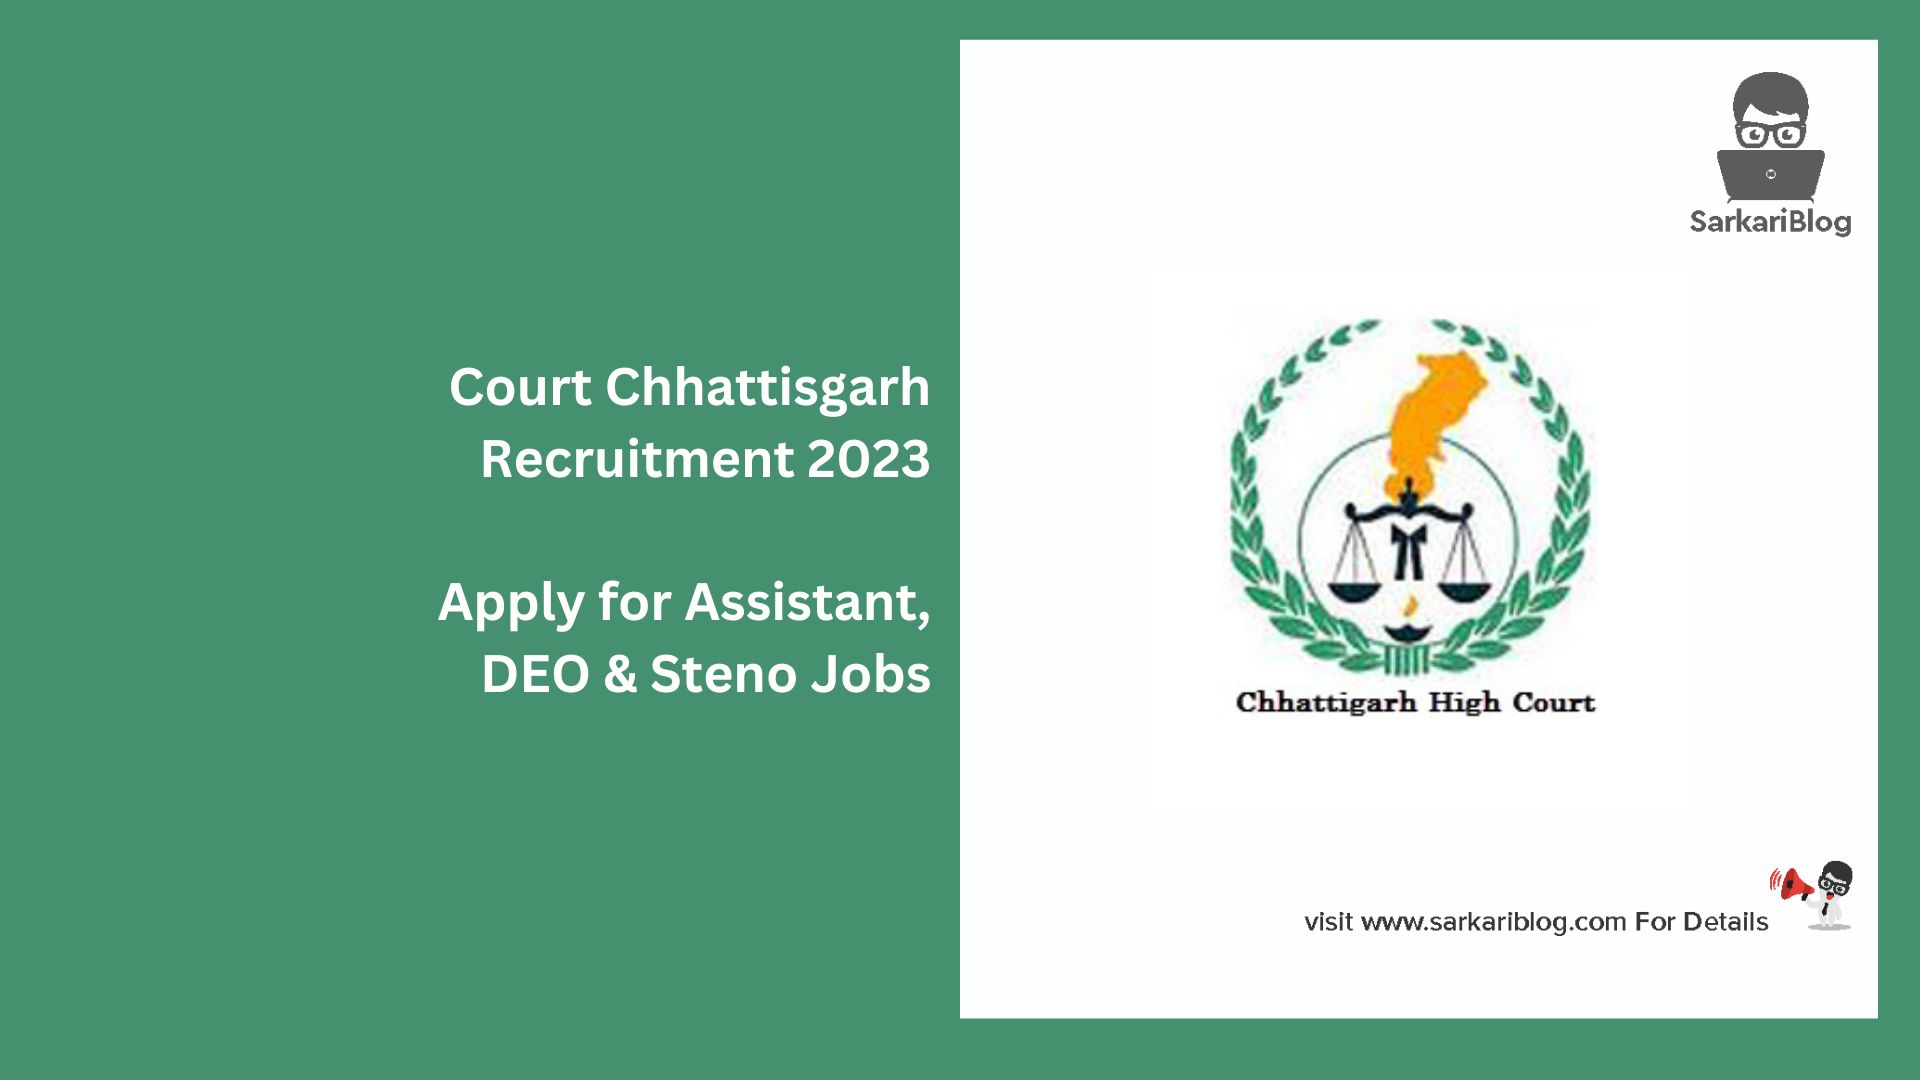 Court Chhattisgarh Recruitment 2023